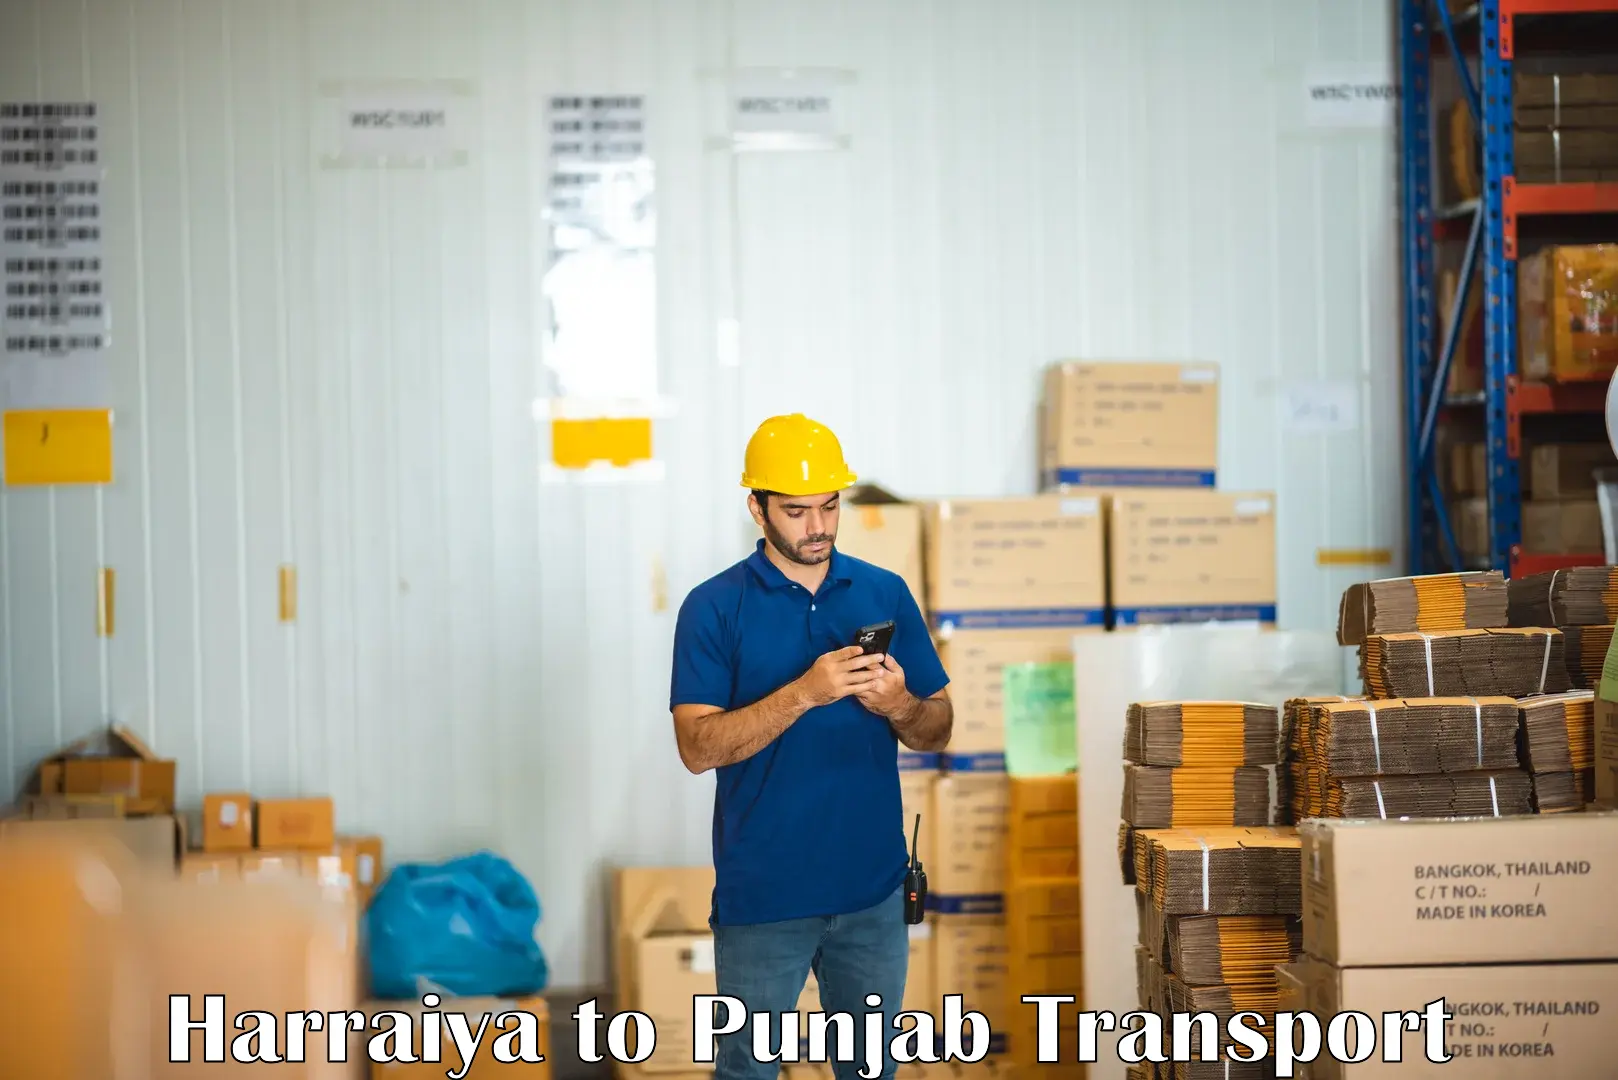 All India transport service Harraiya to Ludhiana